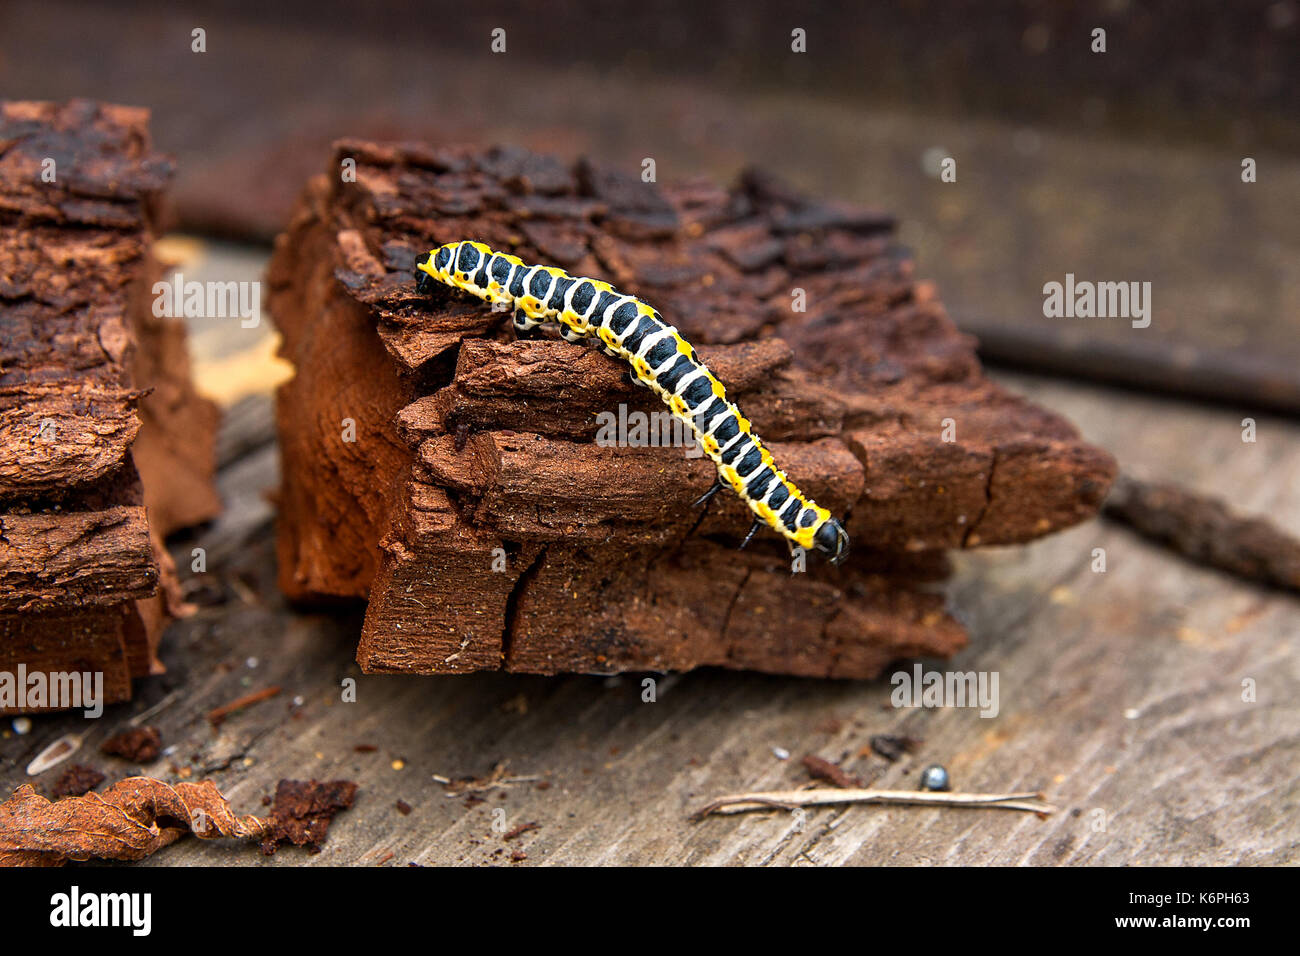 Bella caterpillar si insinua sul pezzo di vecchio legno marrone. caterpillar del vecchio mondo a coda di rondine (papilio machaon), una farfalla della famiglia papilio Foto Stock